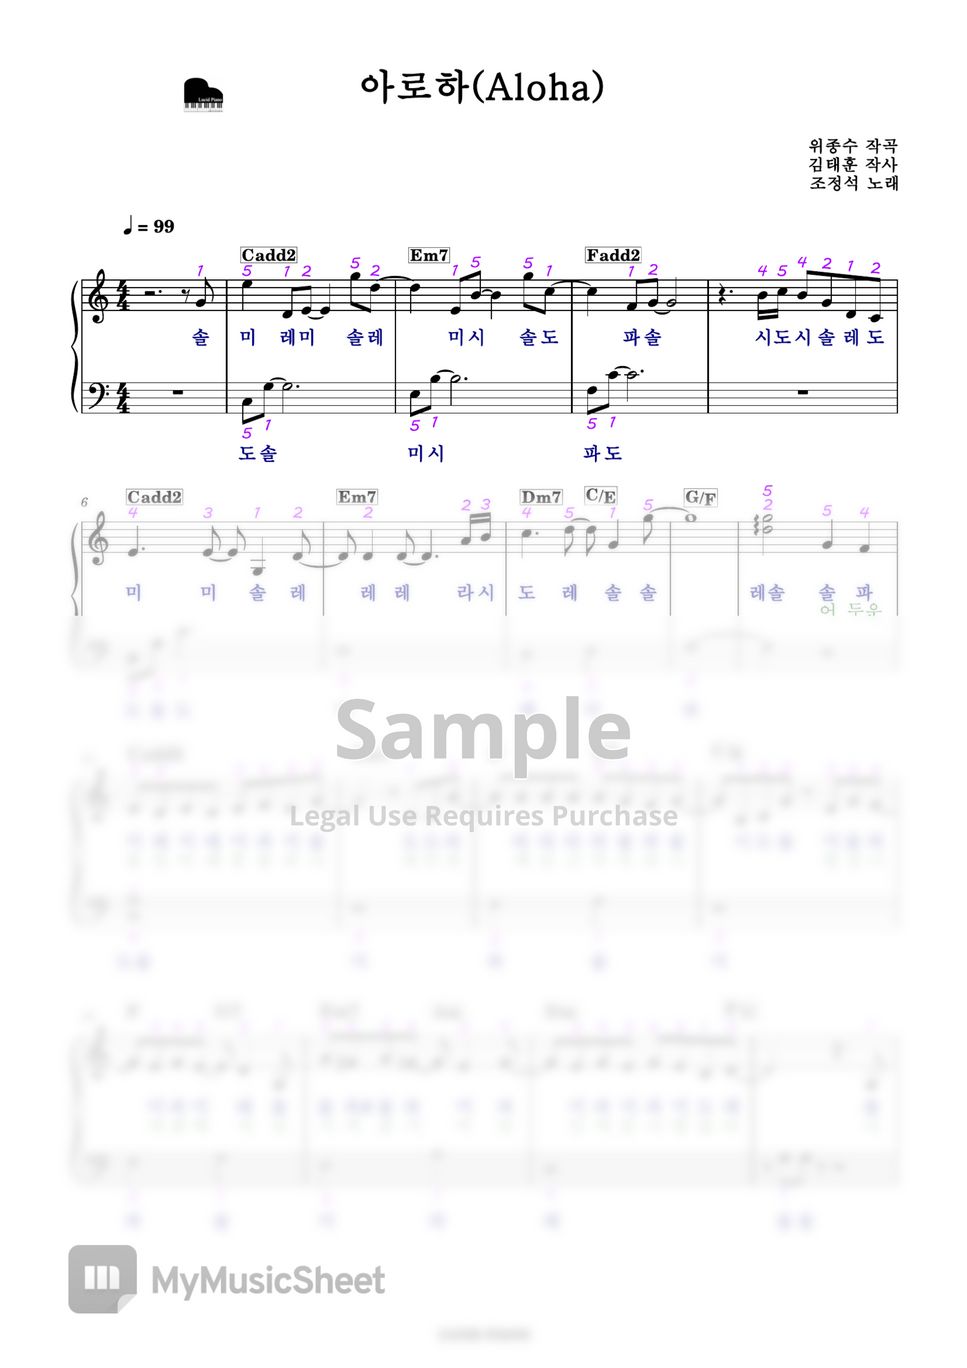 조정석 - 아로하 - 슬기로운 의사생활 OST Part 3 (계이름 악보, 다장조) by Lucid Piano